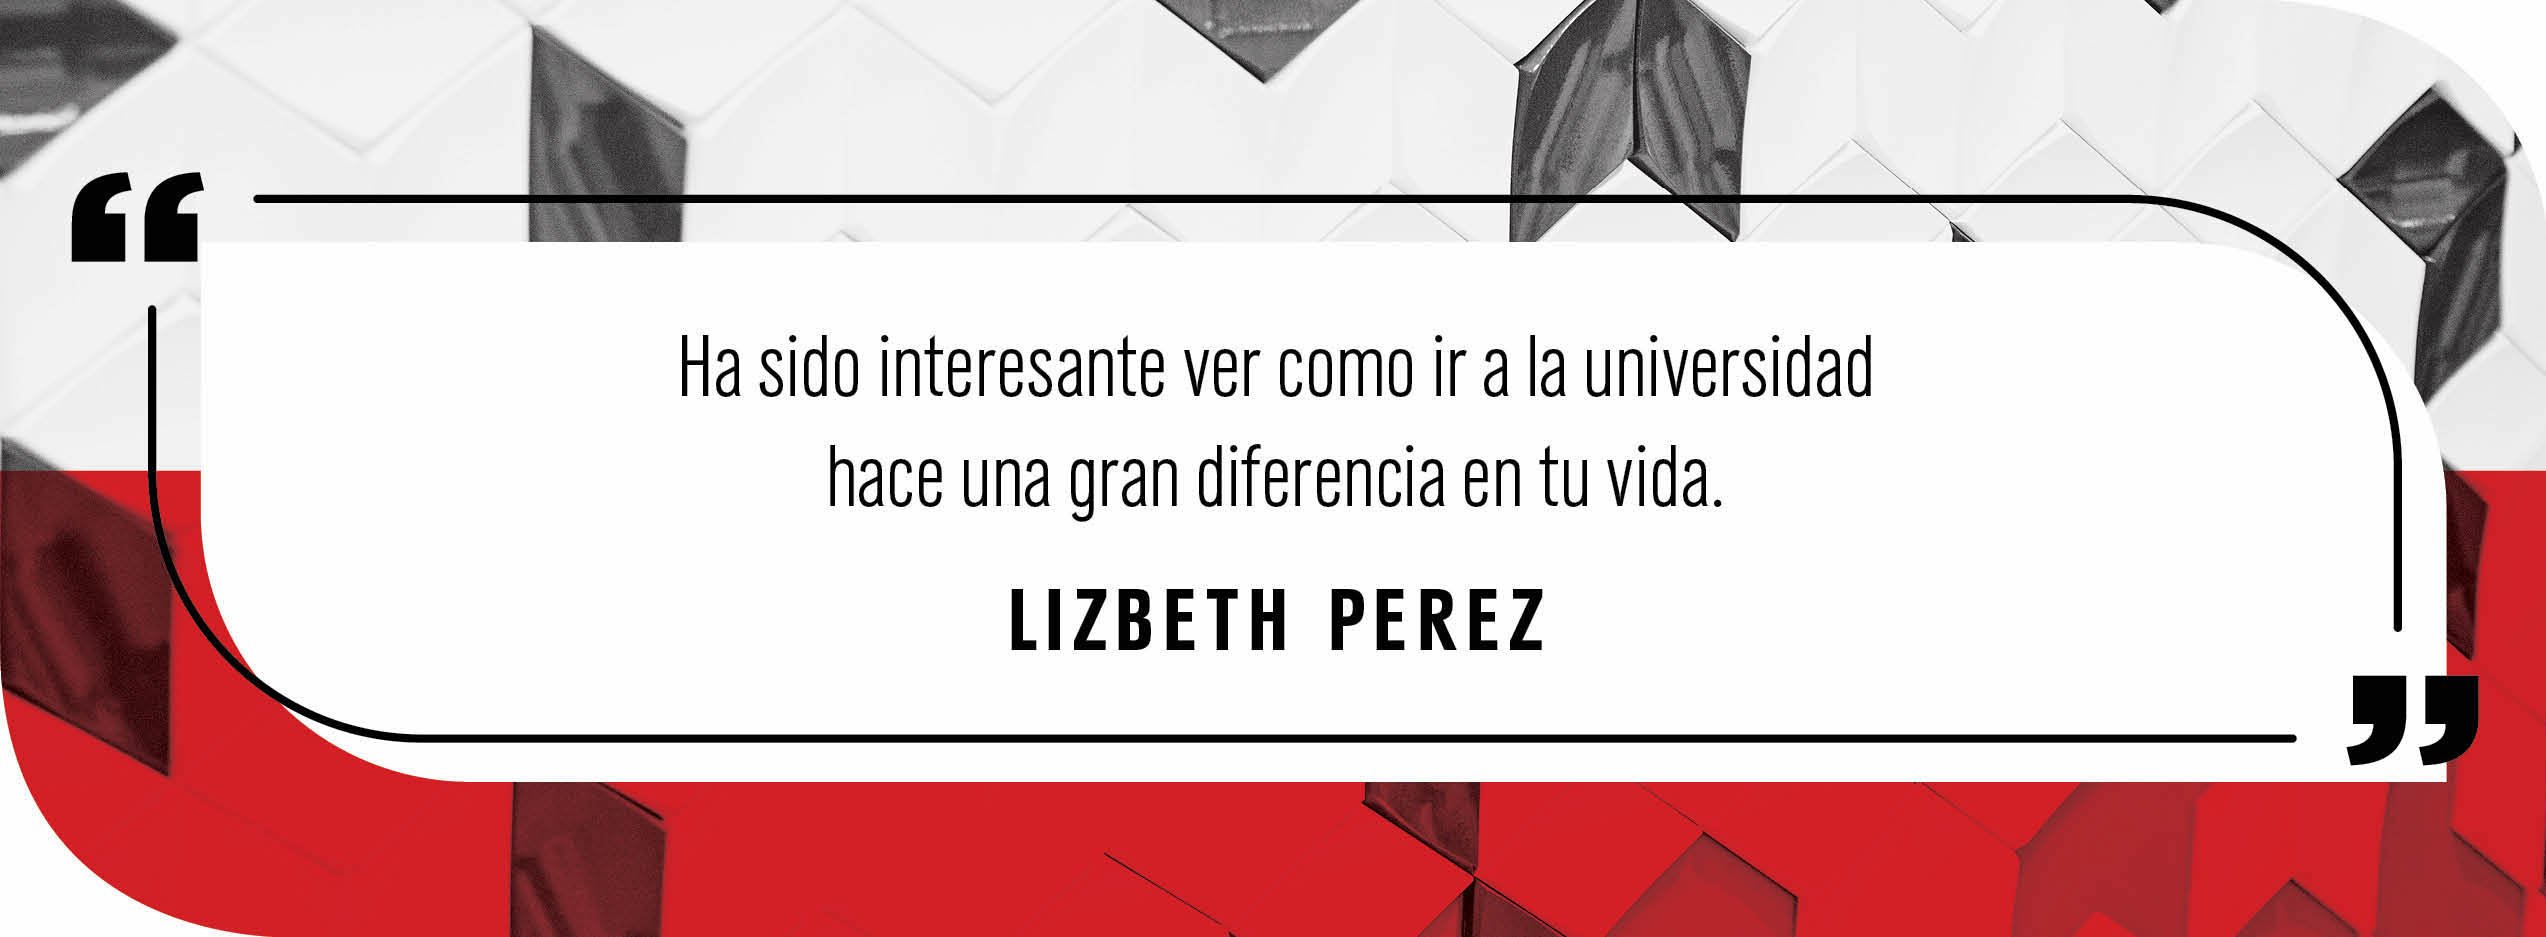 Quote by Lizbeth Perez: "Ha sido interestante ver como ir a la universidad hace una gran diferencia en tu vida."